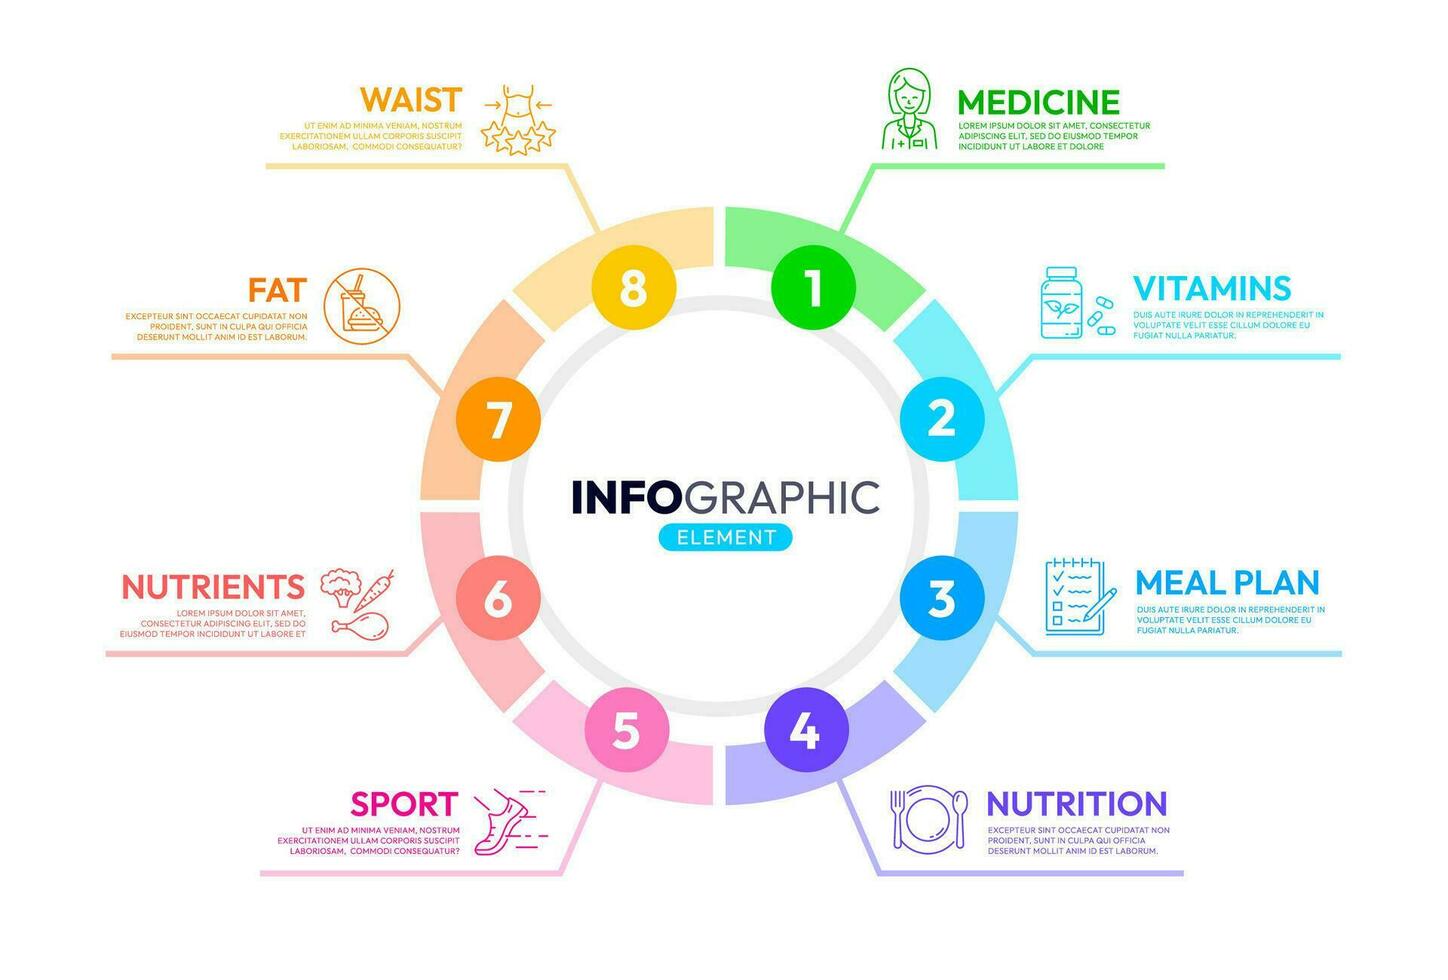 Gesundheit Pflege Infografiken, Diät Ernährung, Gewicht vektor